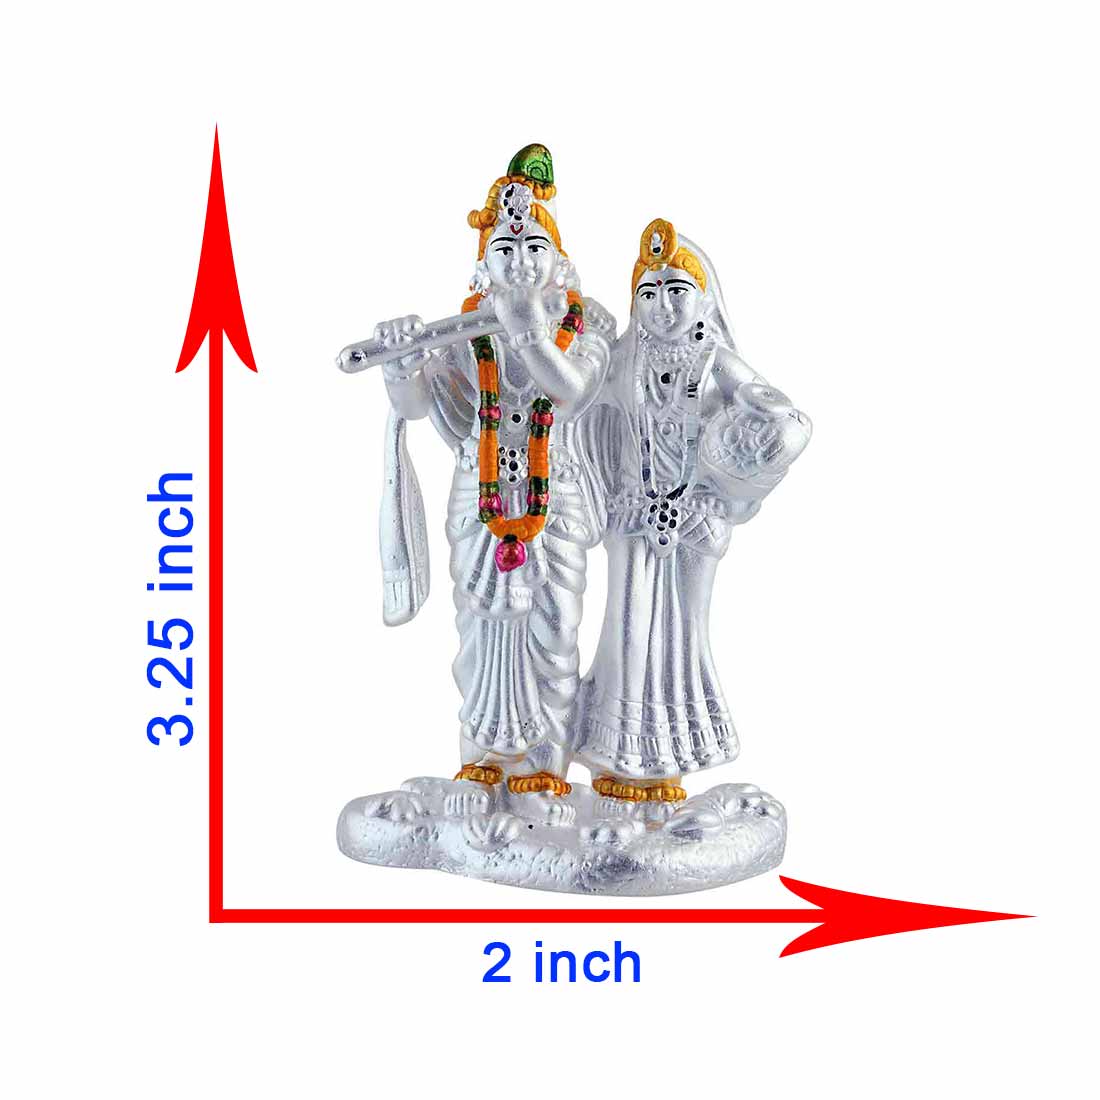 Silver Radha Krishna Idol Showing Dimension of Radha Kanhiya Murti